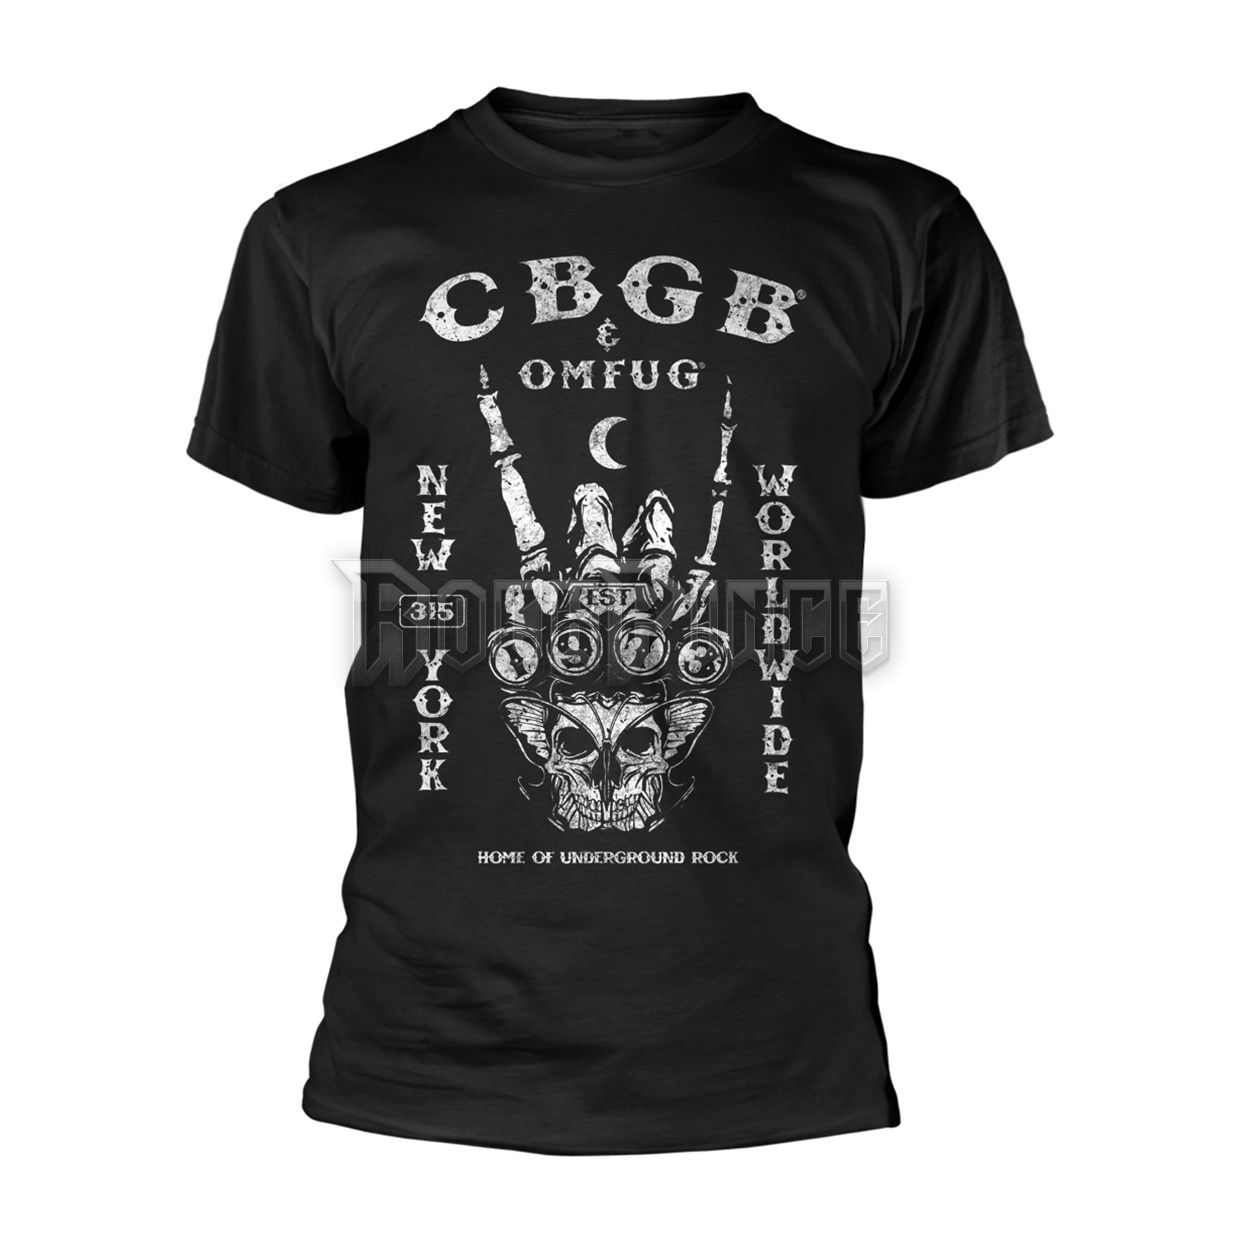 CBGB - EST. 1973 - PH10654